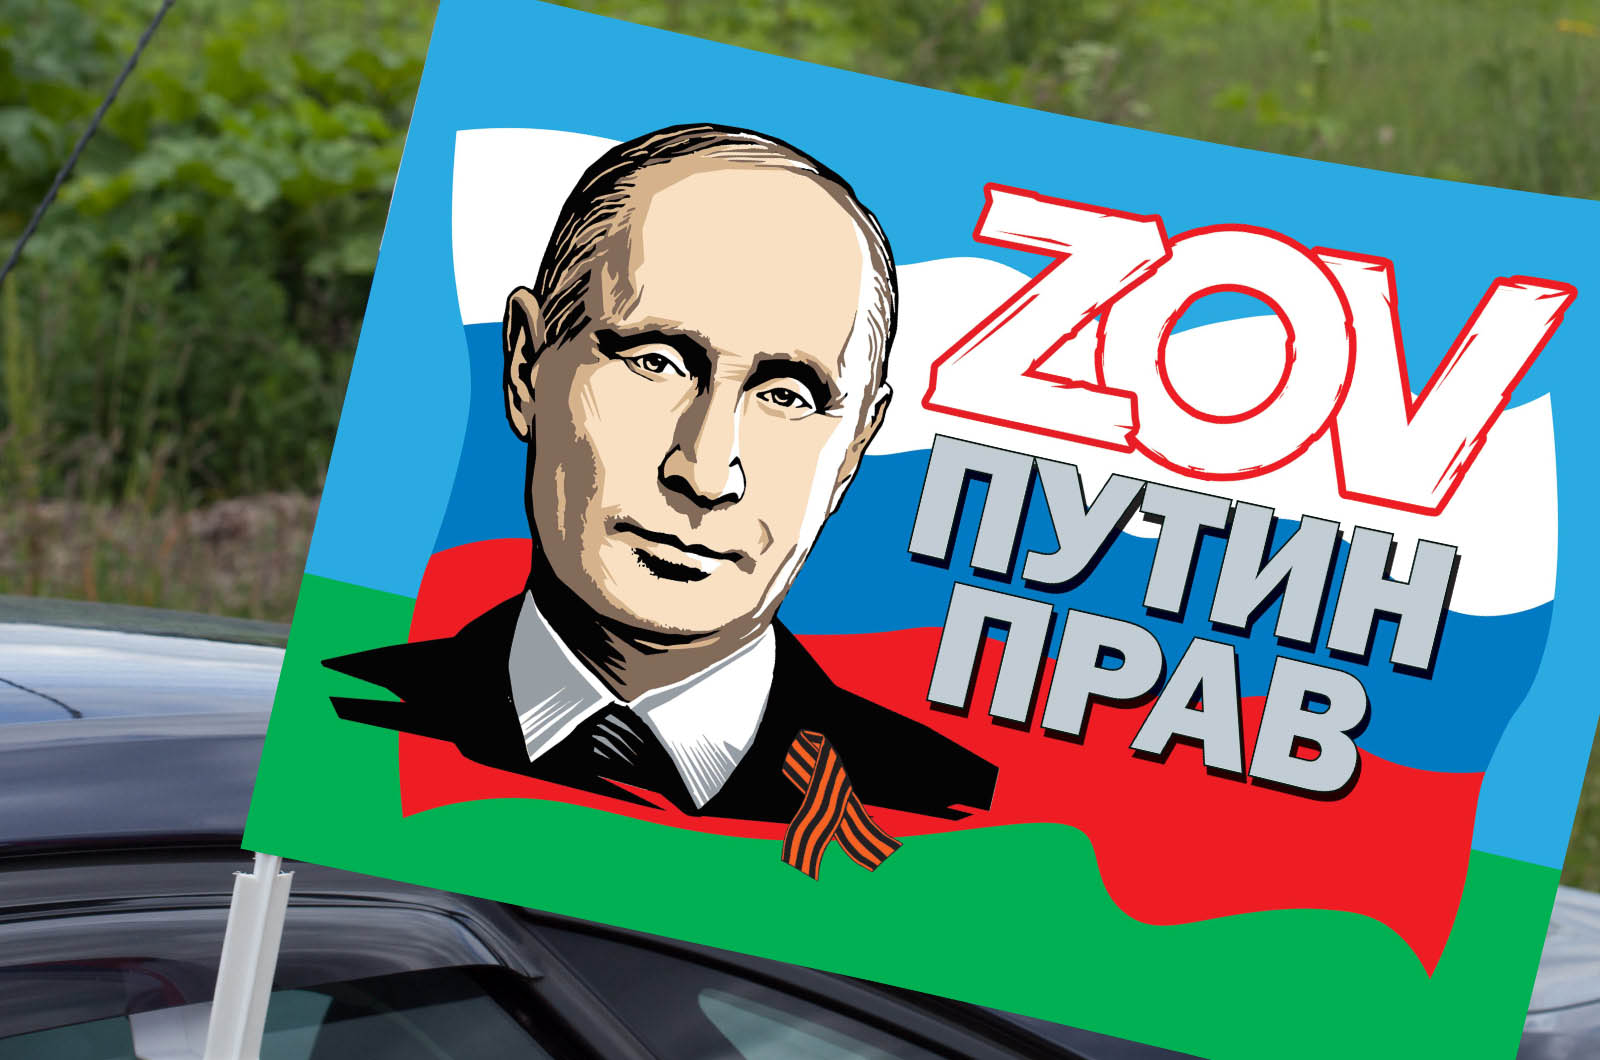 Автомобильный флаг десантников ZOV "Путин прав"